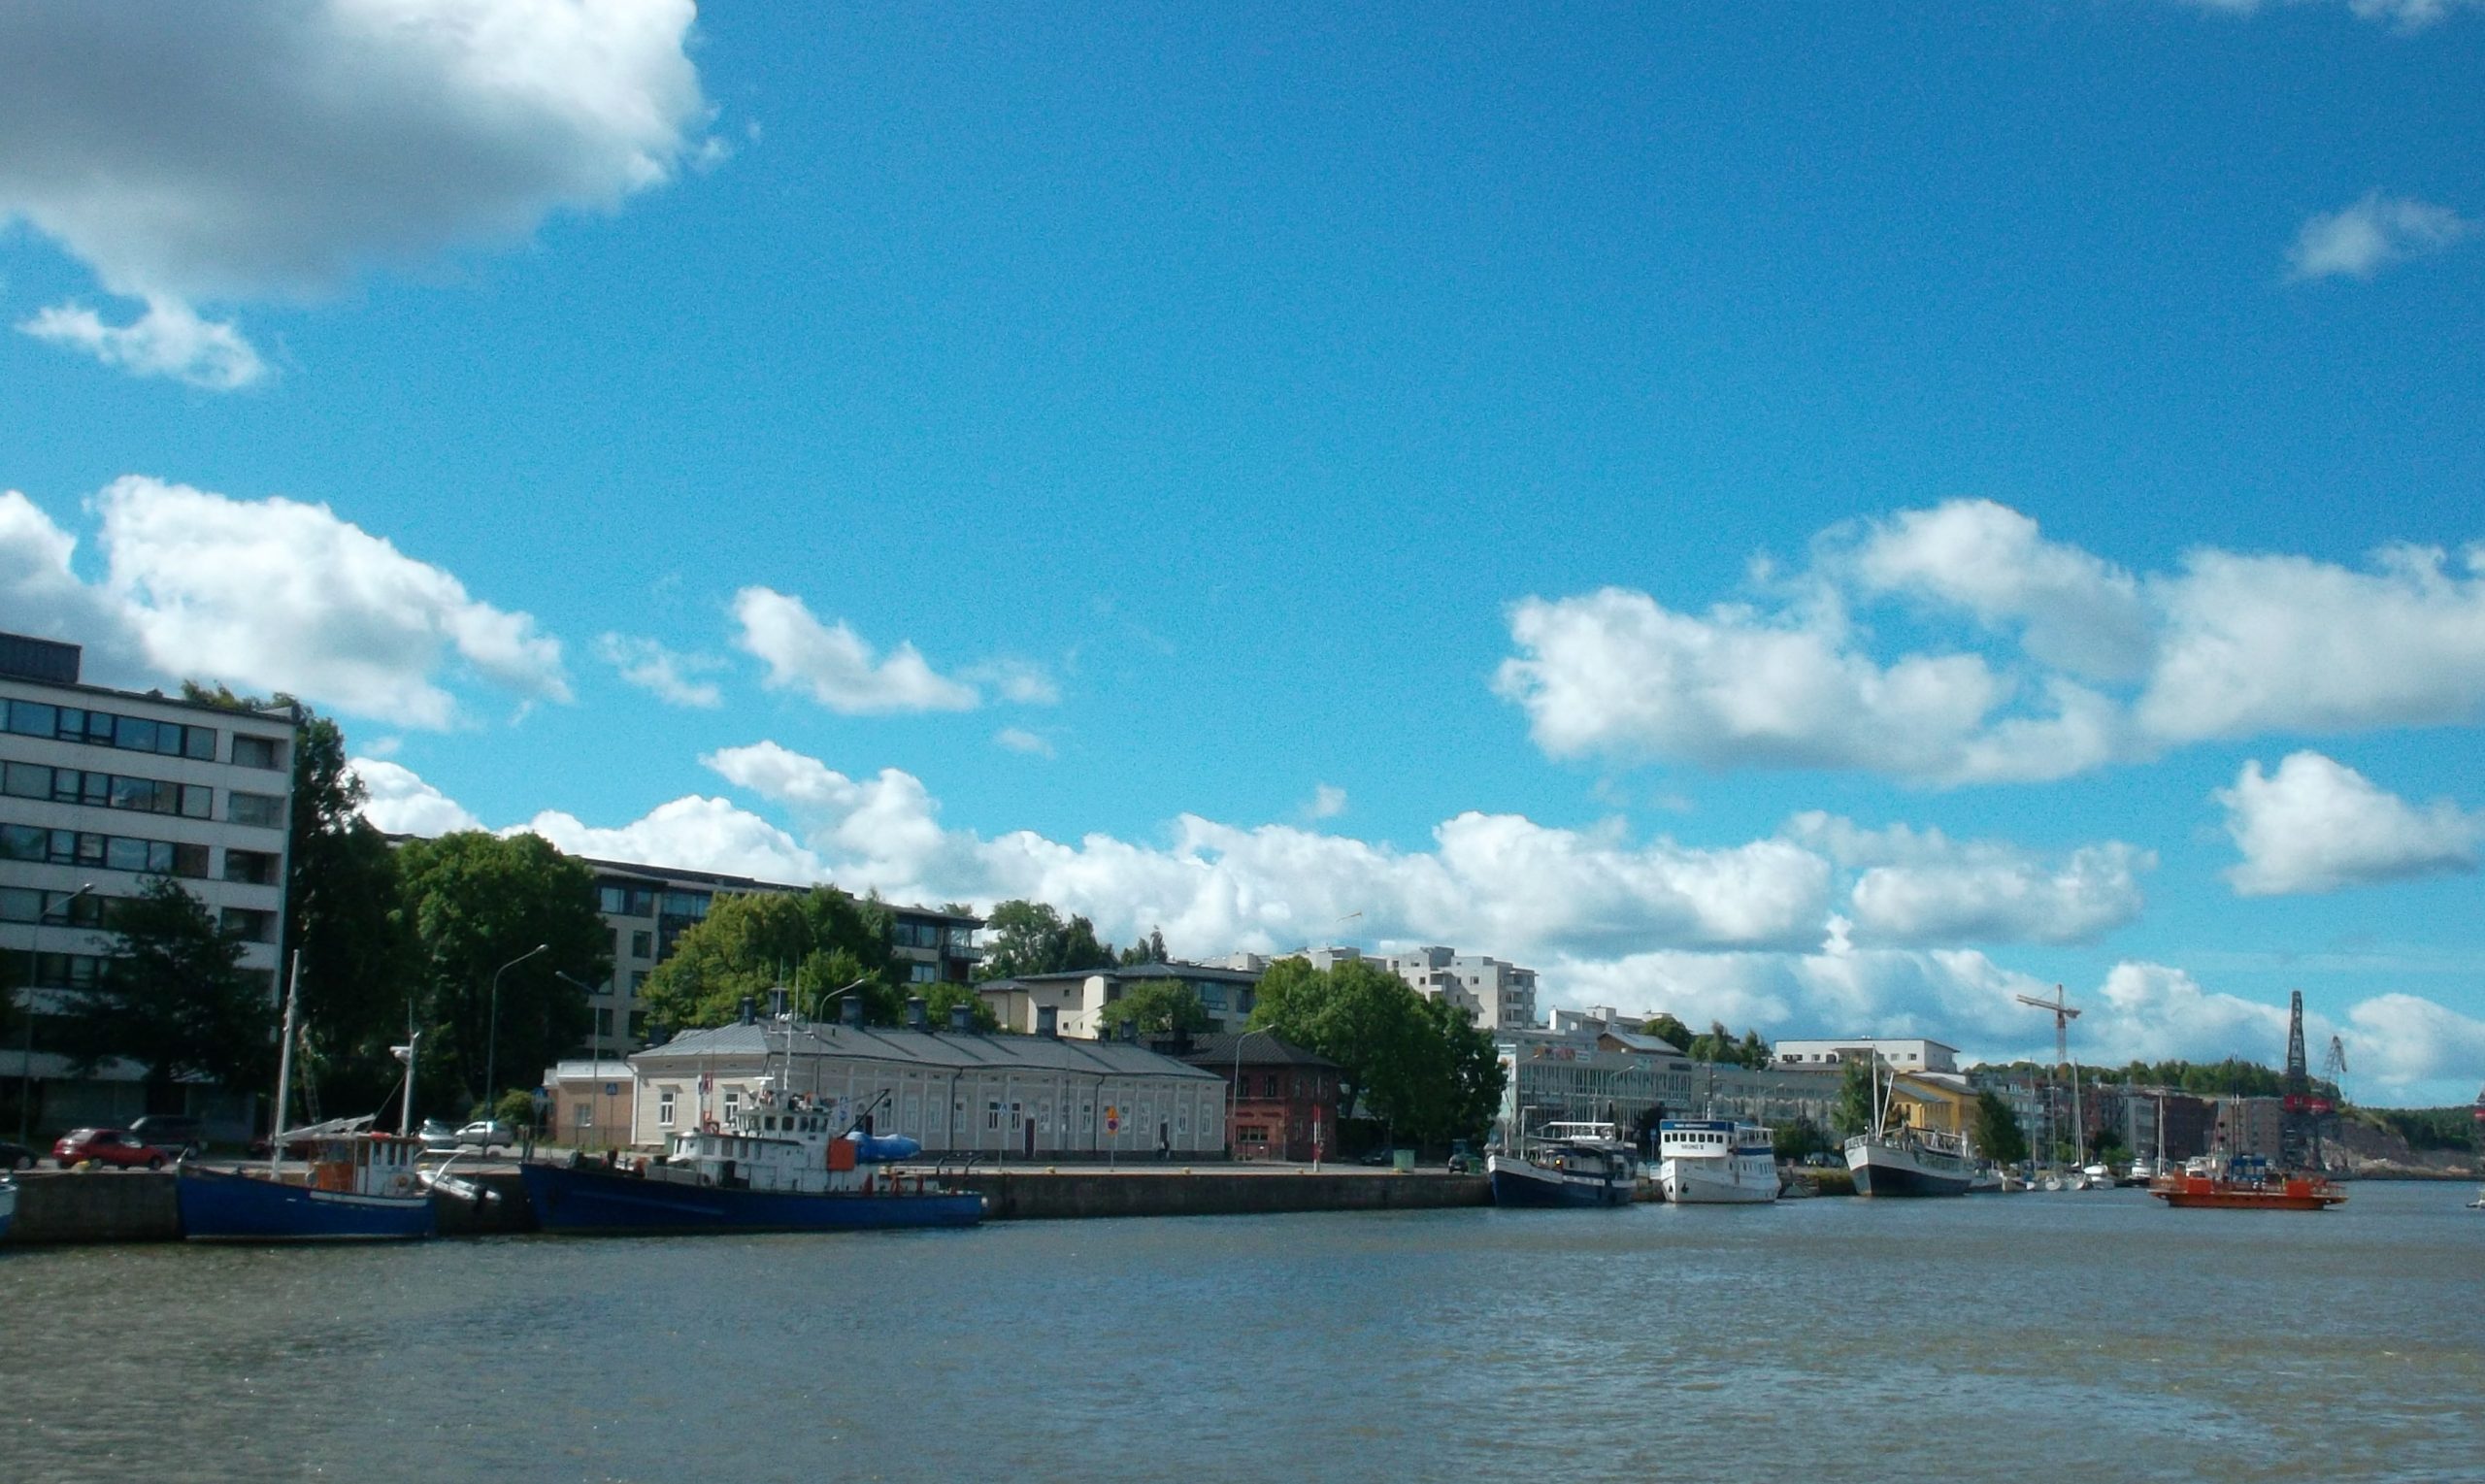 Joelta päin otetussa kuvassa näkyy erilaisia pienehköjä aluksia joessa ja rannassa eri aikakausien rakennuksia. Lähimpänä yksikerroksinen vaalea puurakennus ja seitsemänkerroksinen kerrostalo.